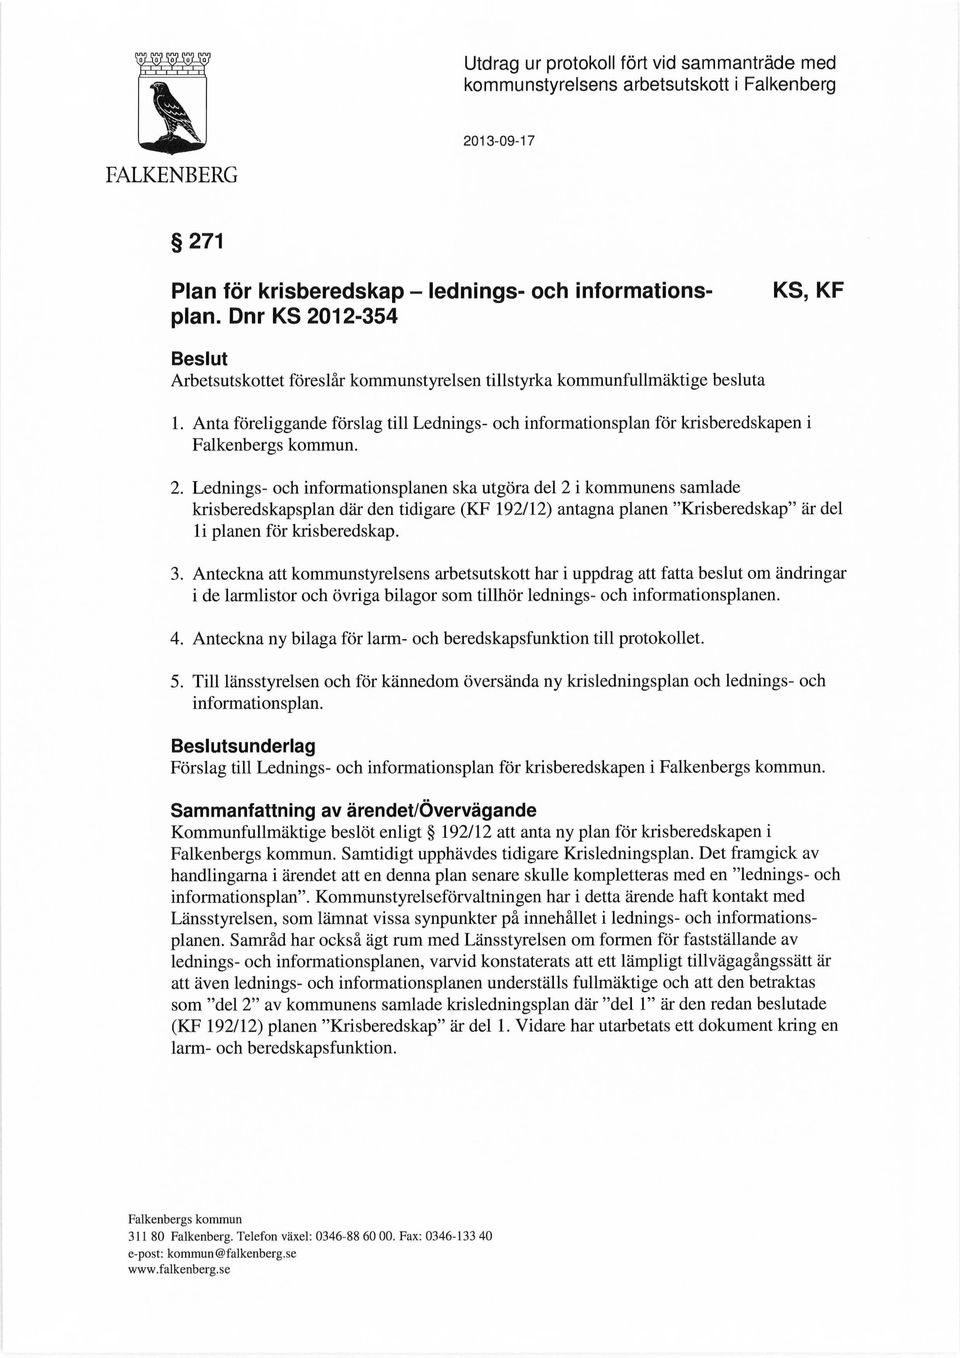 Anta föreliggande förslag till Lednings- och informationsplan för krisberedskapen i Falkenbergs kommun. 2.